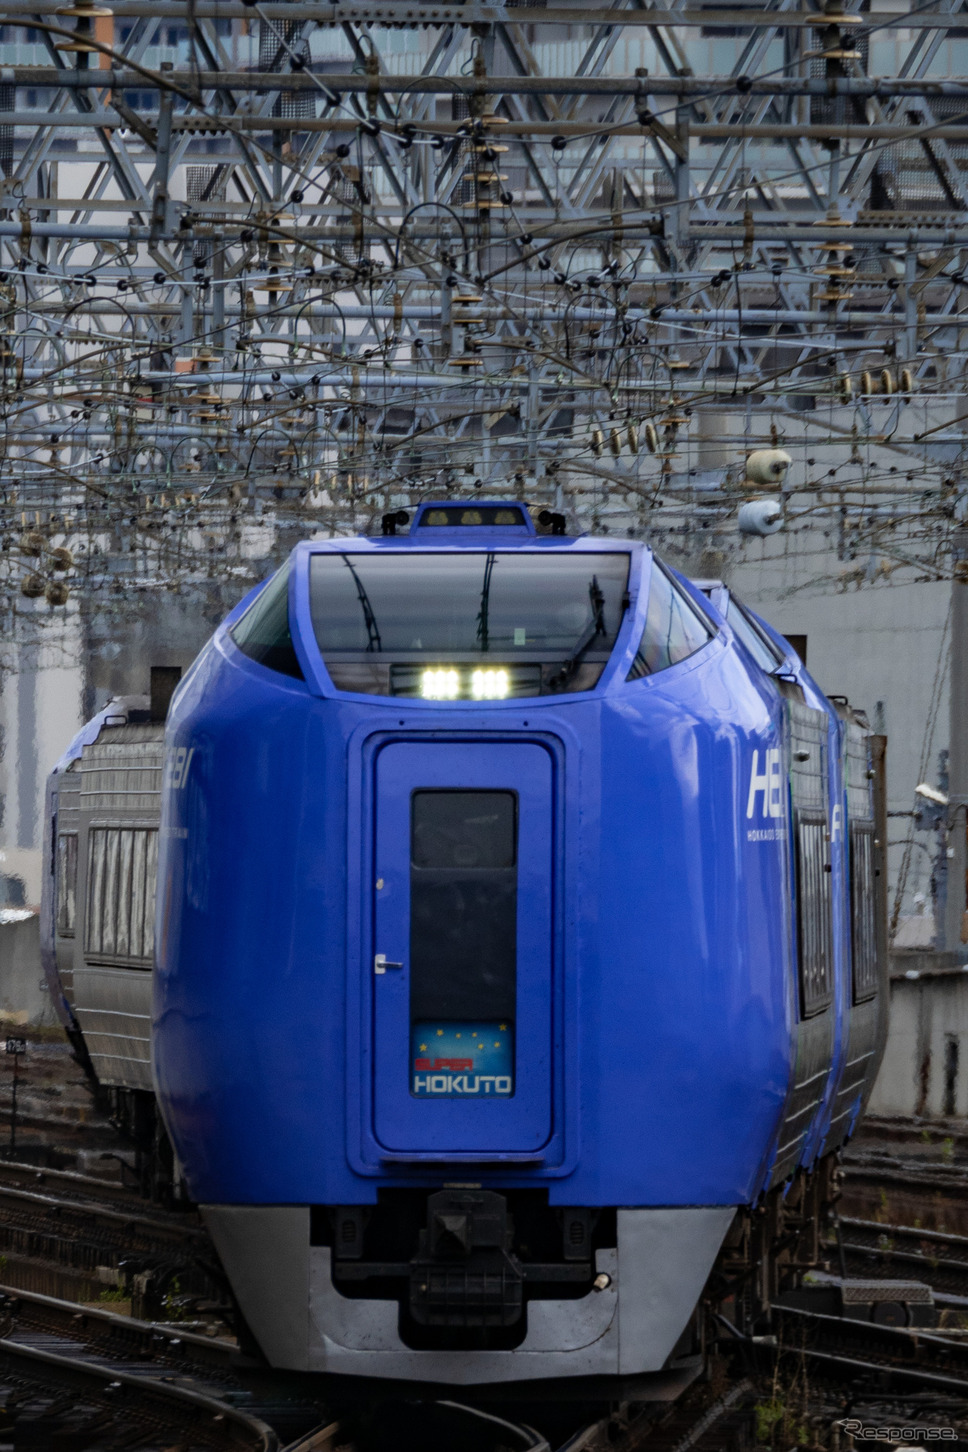 キハ281-901を先頭に札幌駅8番線ホームに進入する9097D『スーパー北斗』。スカートは当初のグレーのものに復刻されていた。《写真撮影 佐藤正樹》